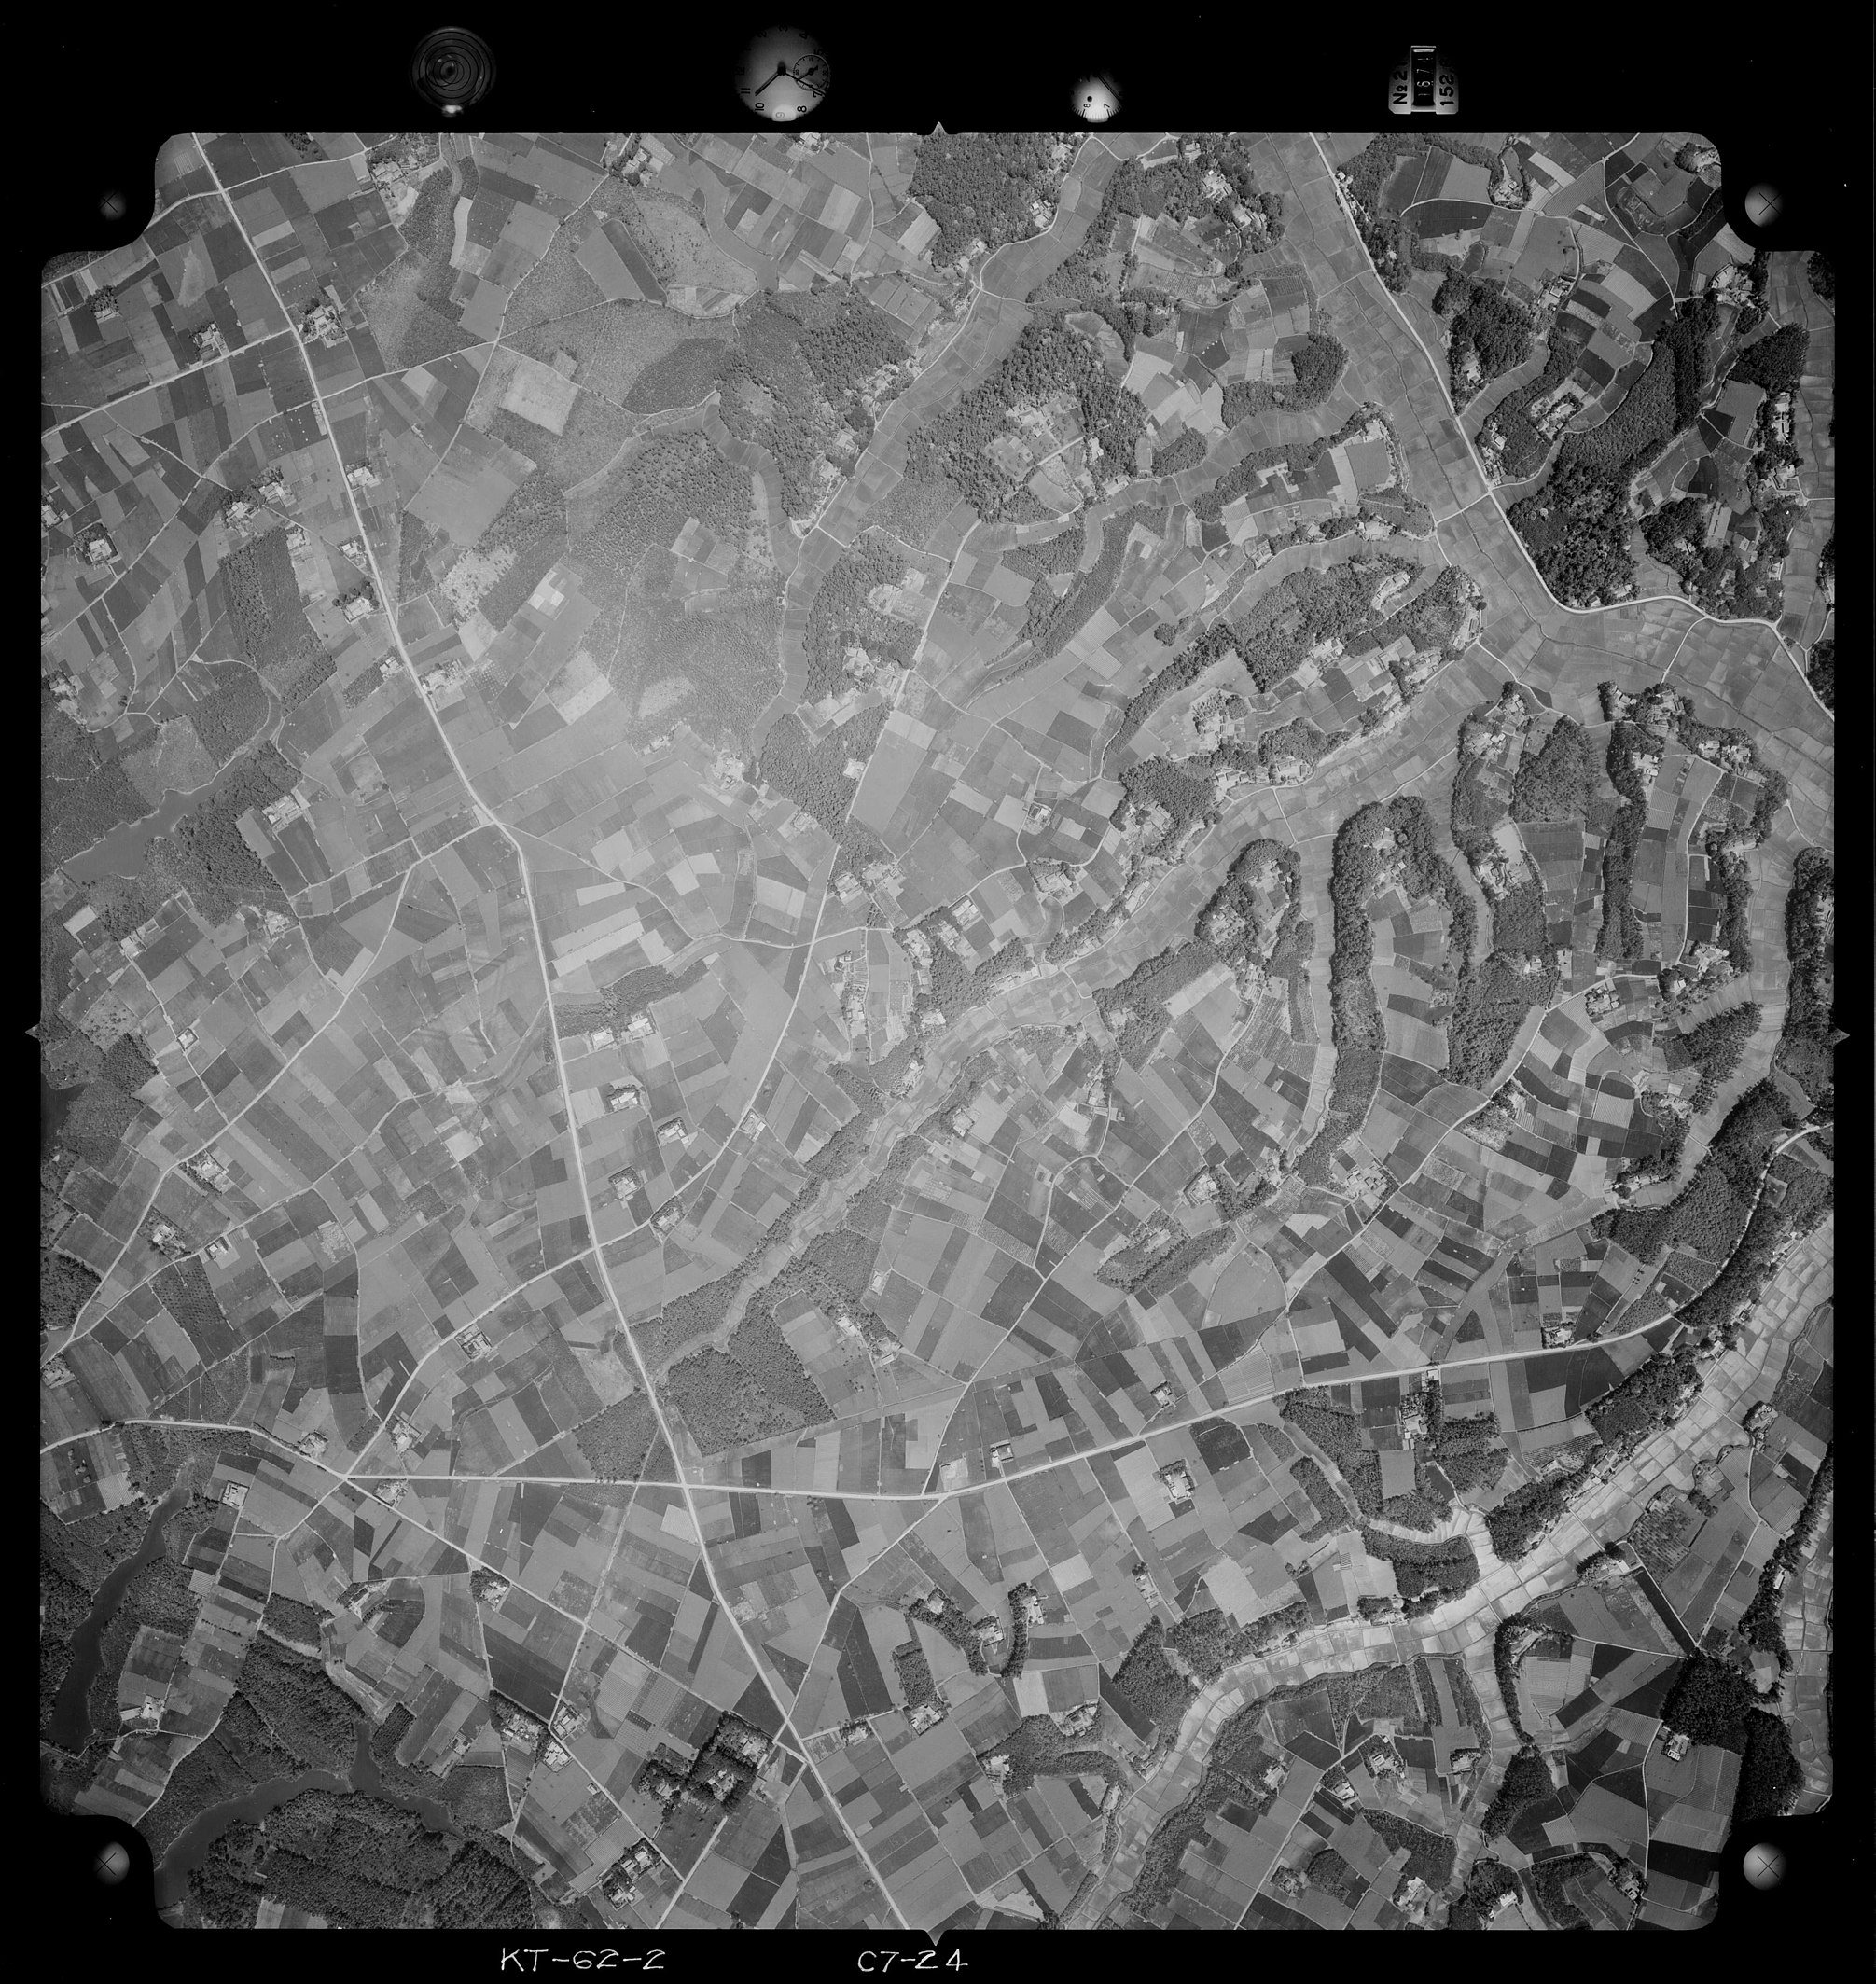 1962年5月21日に国土地理院が撮影した井上長者館跡周辺の空中写真の切り抜き。遺跡発見の経緯となった写真は茨城県農地課によって撮影されたものであり[1]、本写真は遺跡の発見とは無関係である点に留意されたい。